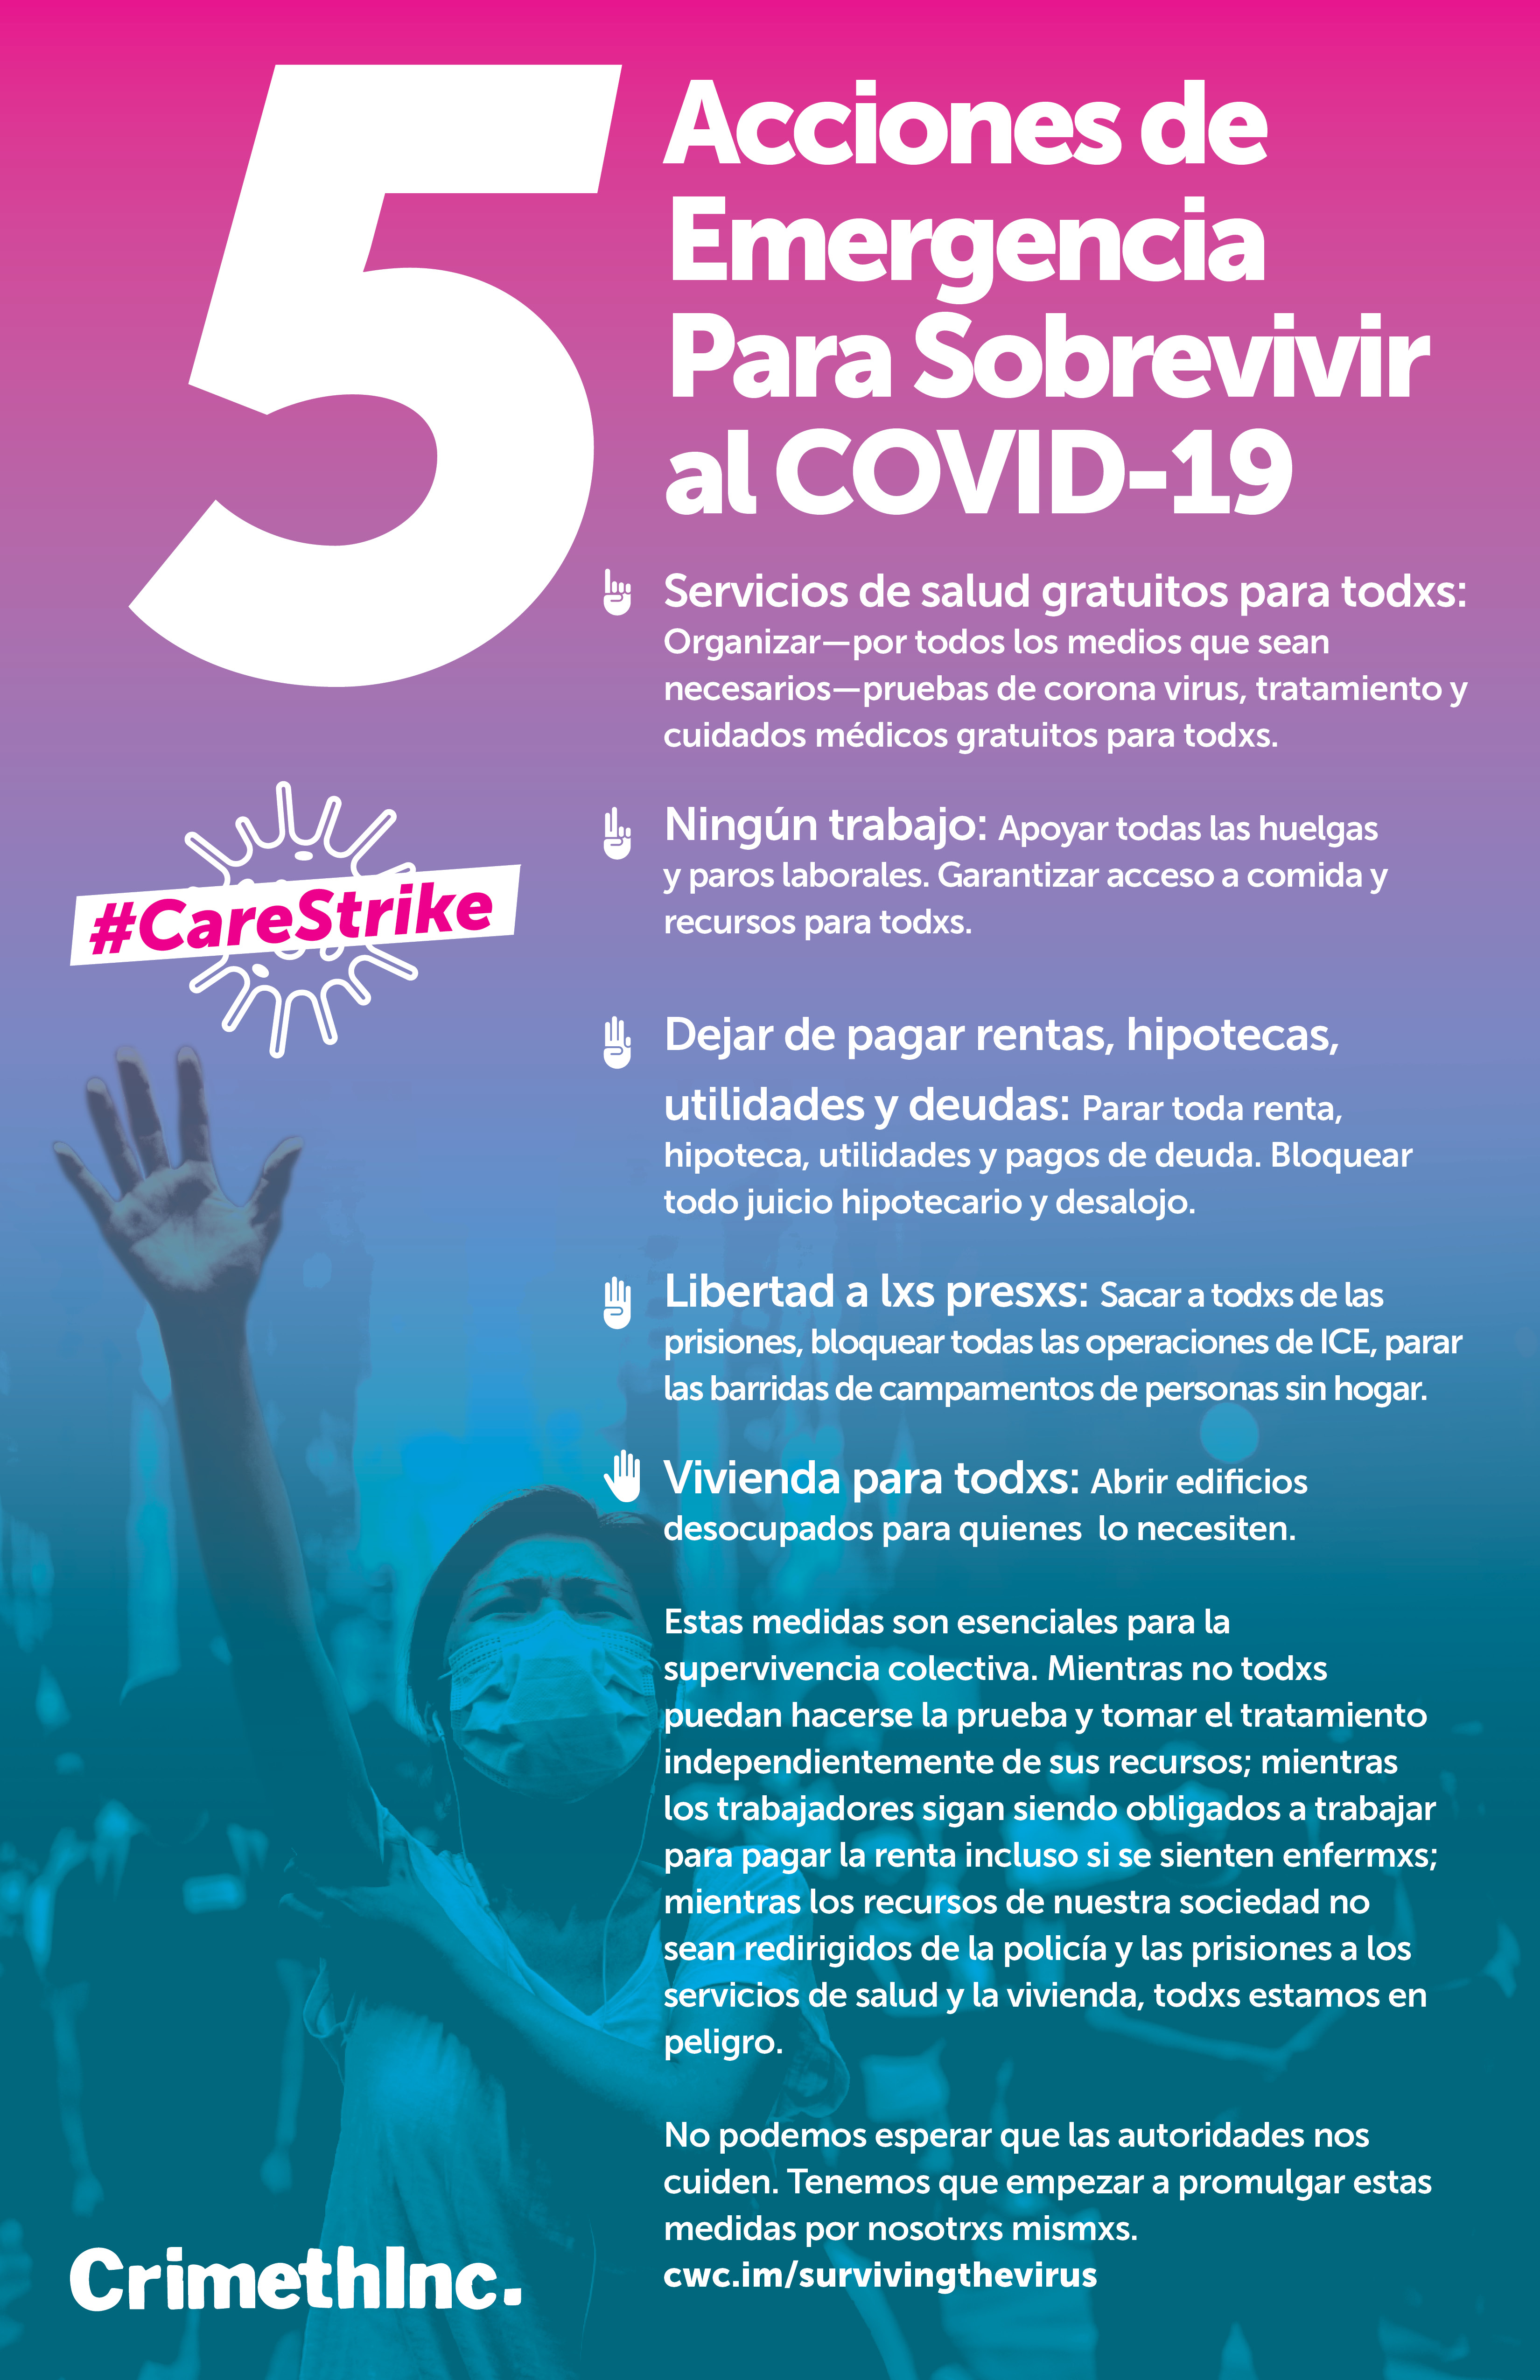 Photo of ‘Cinco acciones de emergencia para sobrevivir al COVID-19’ front side